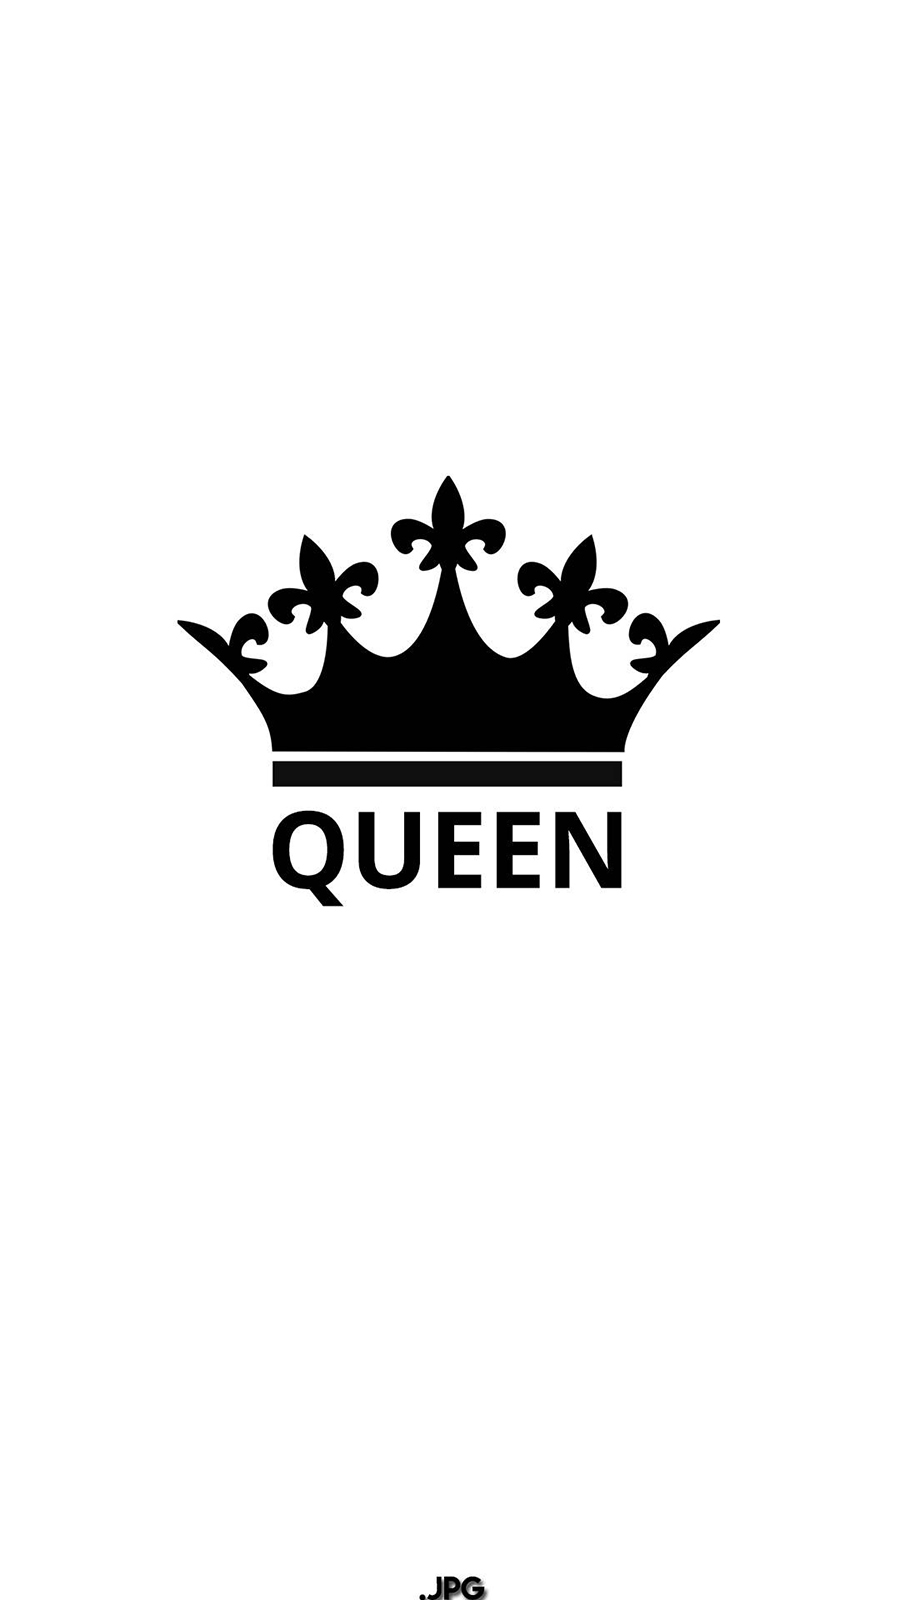 22 Queen Logo Wallpapers  WallpaperSafari